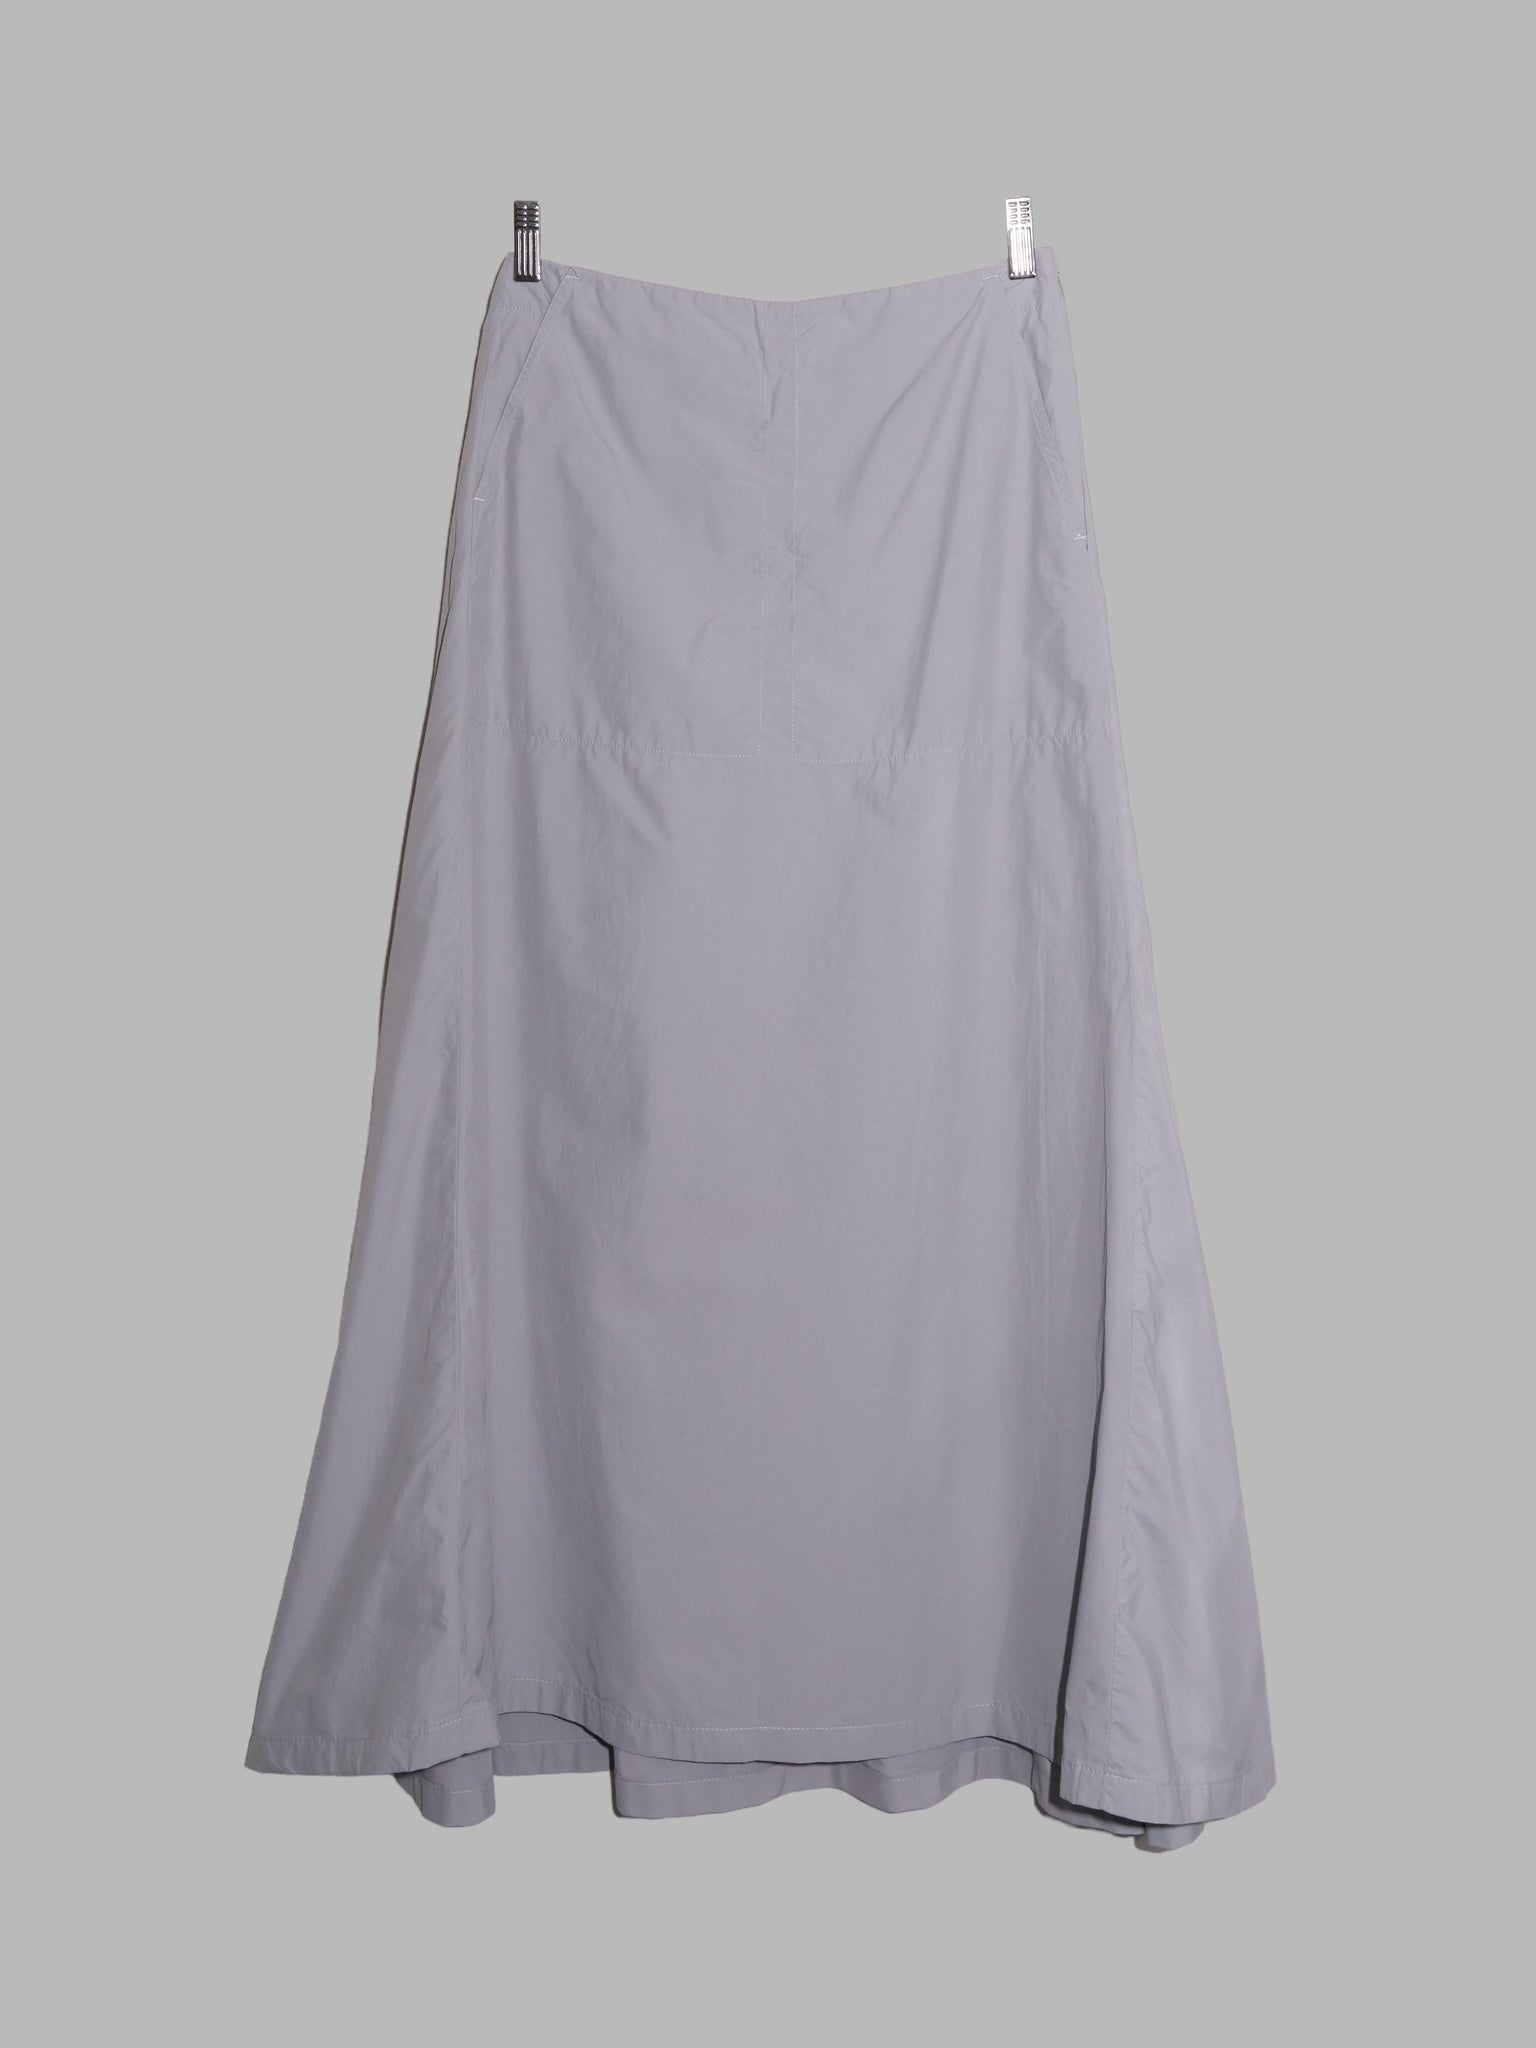 Dirk Bikkembergs 1990s 2000s grey nylon flared maxi skirt - size 40